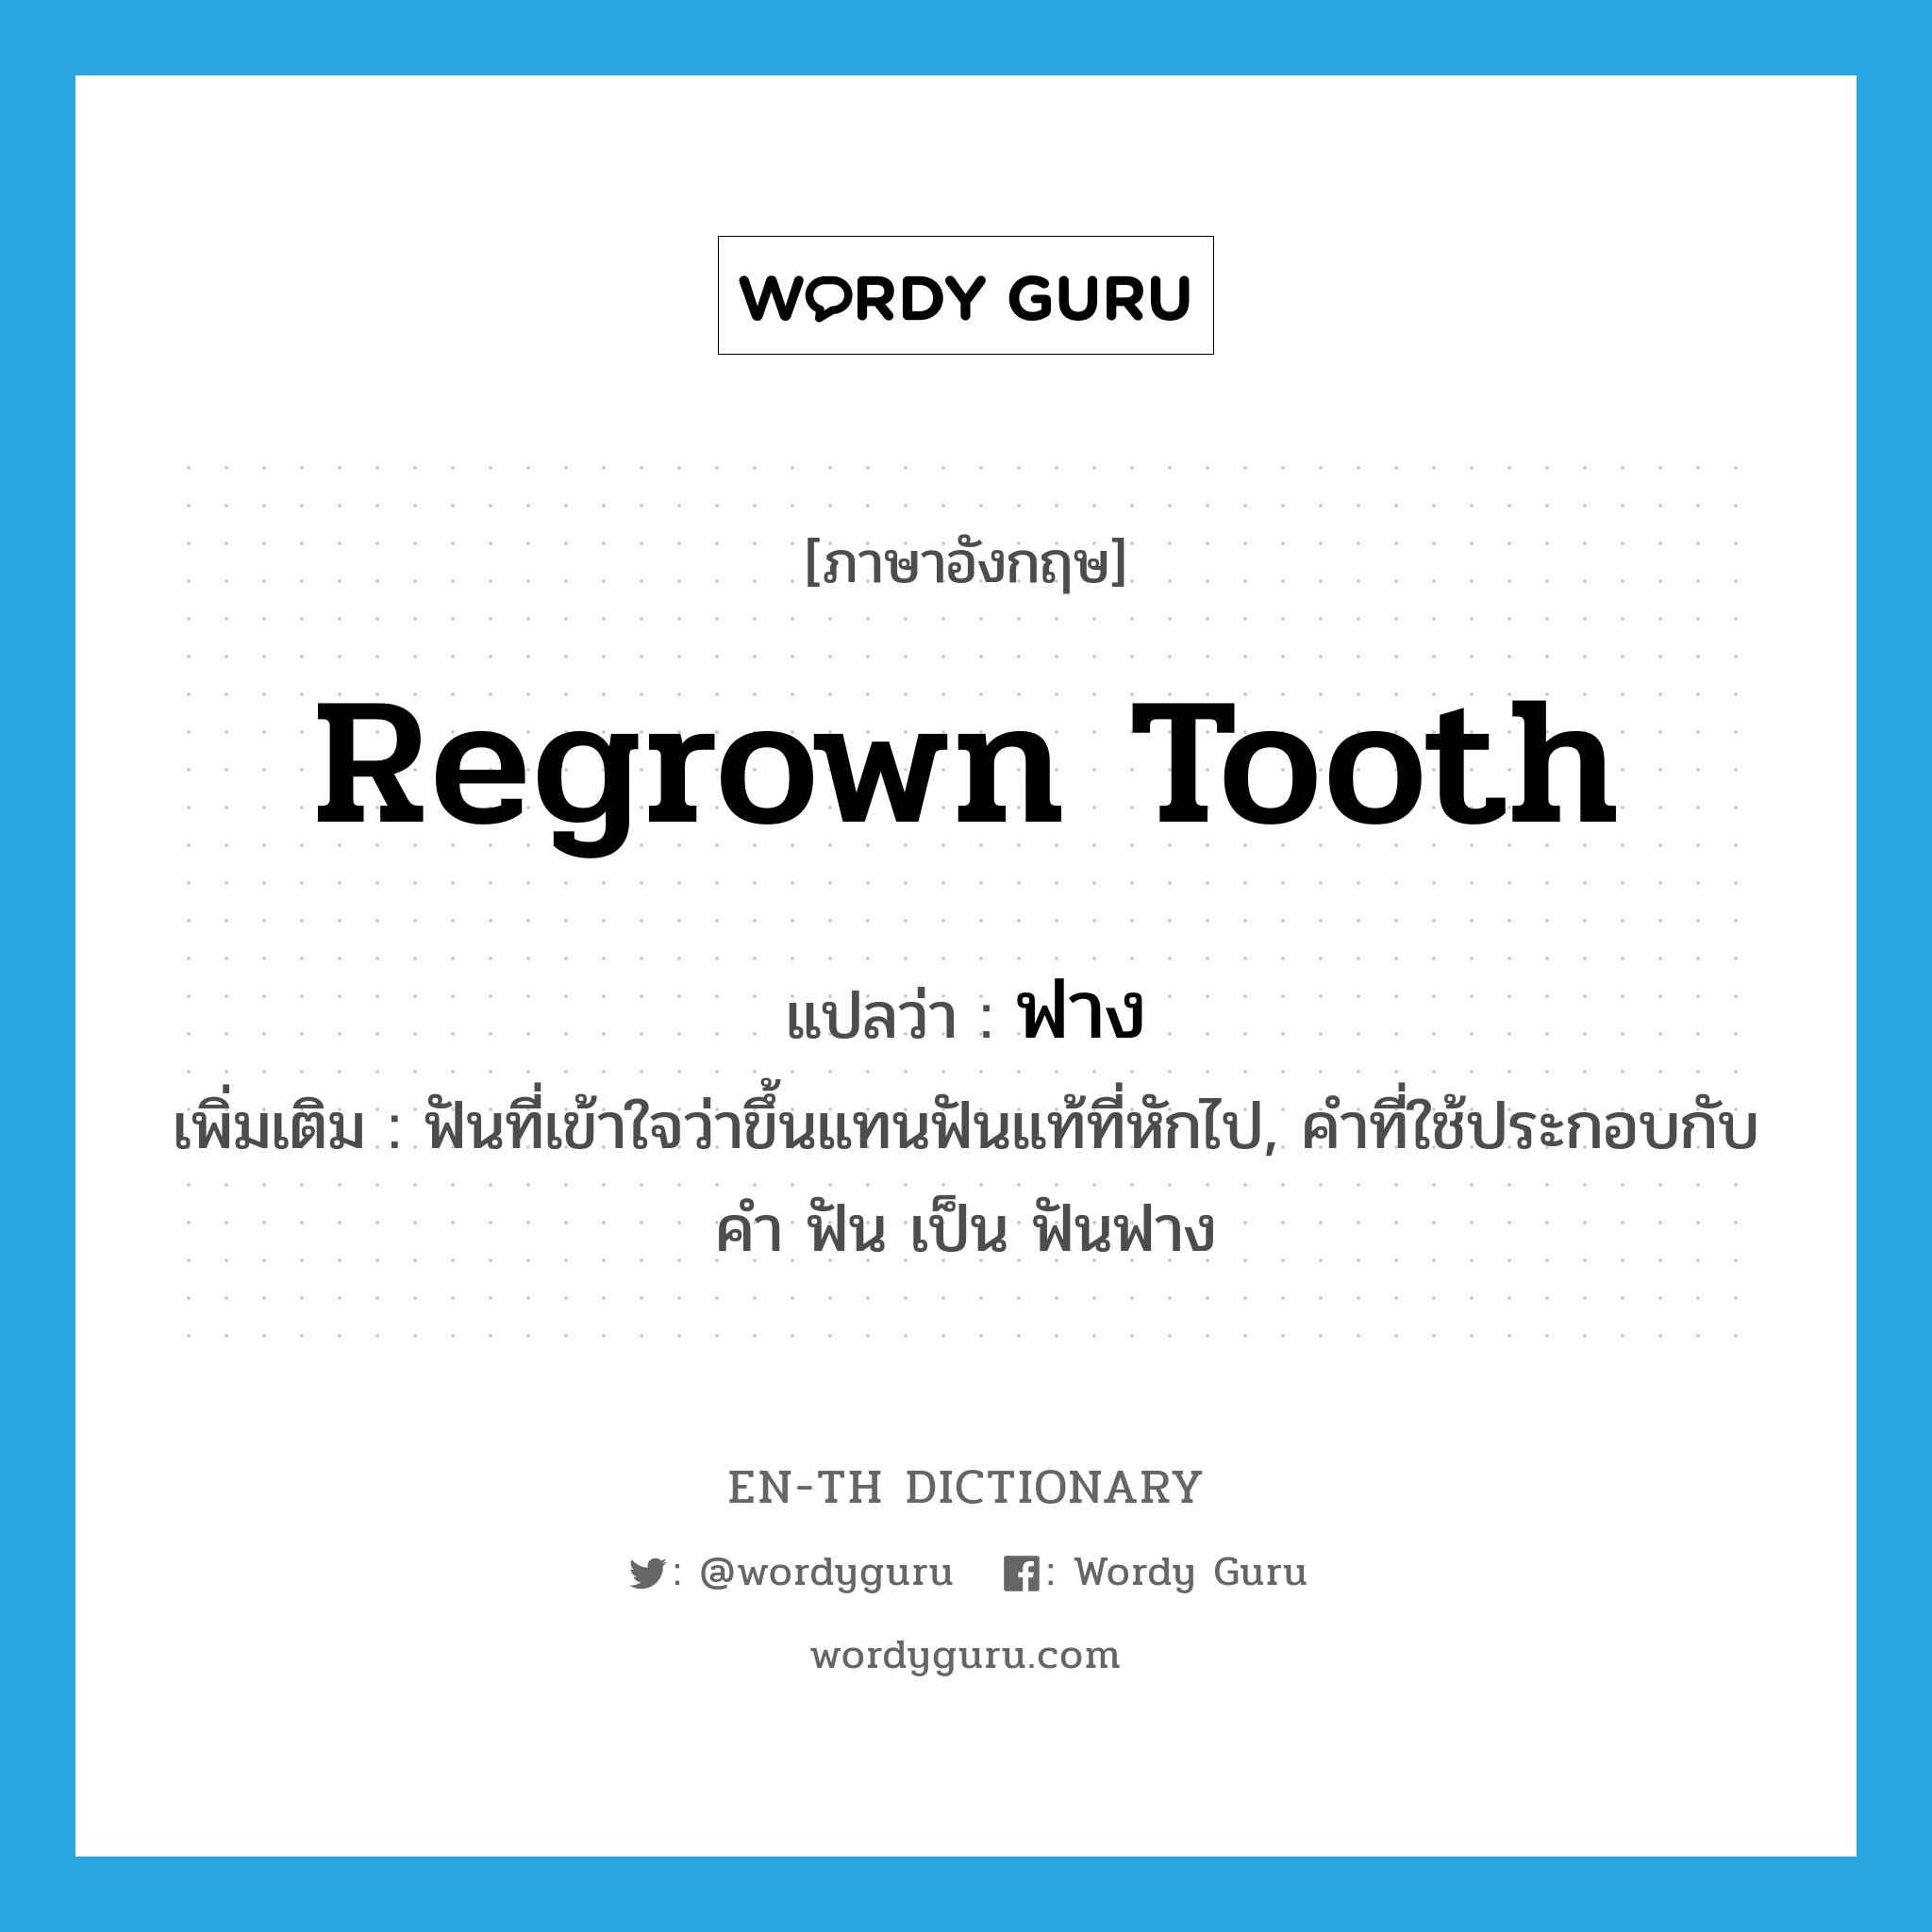 ฟาง ภาษาอังกฤษ?, คำศัพท์ภาษาอังกฤษ ฟาง แปลว่า regrown tooth ประเภท N เพิ่มเติม ฟันที่เข้าใจว่าขึ้นแทนฟันแท้ที่หักไป, คำที่ใช้ประกอบกับคำ ฟัน เป็น ฟันฟาง หมวด N